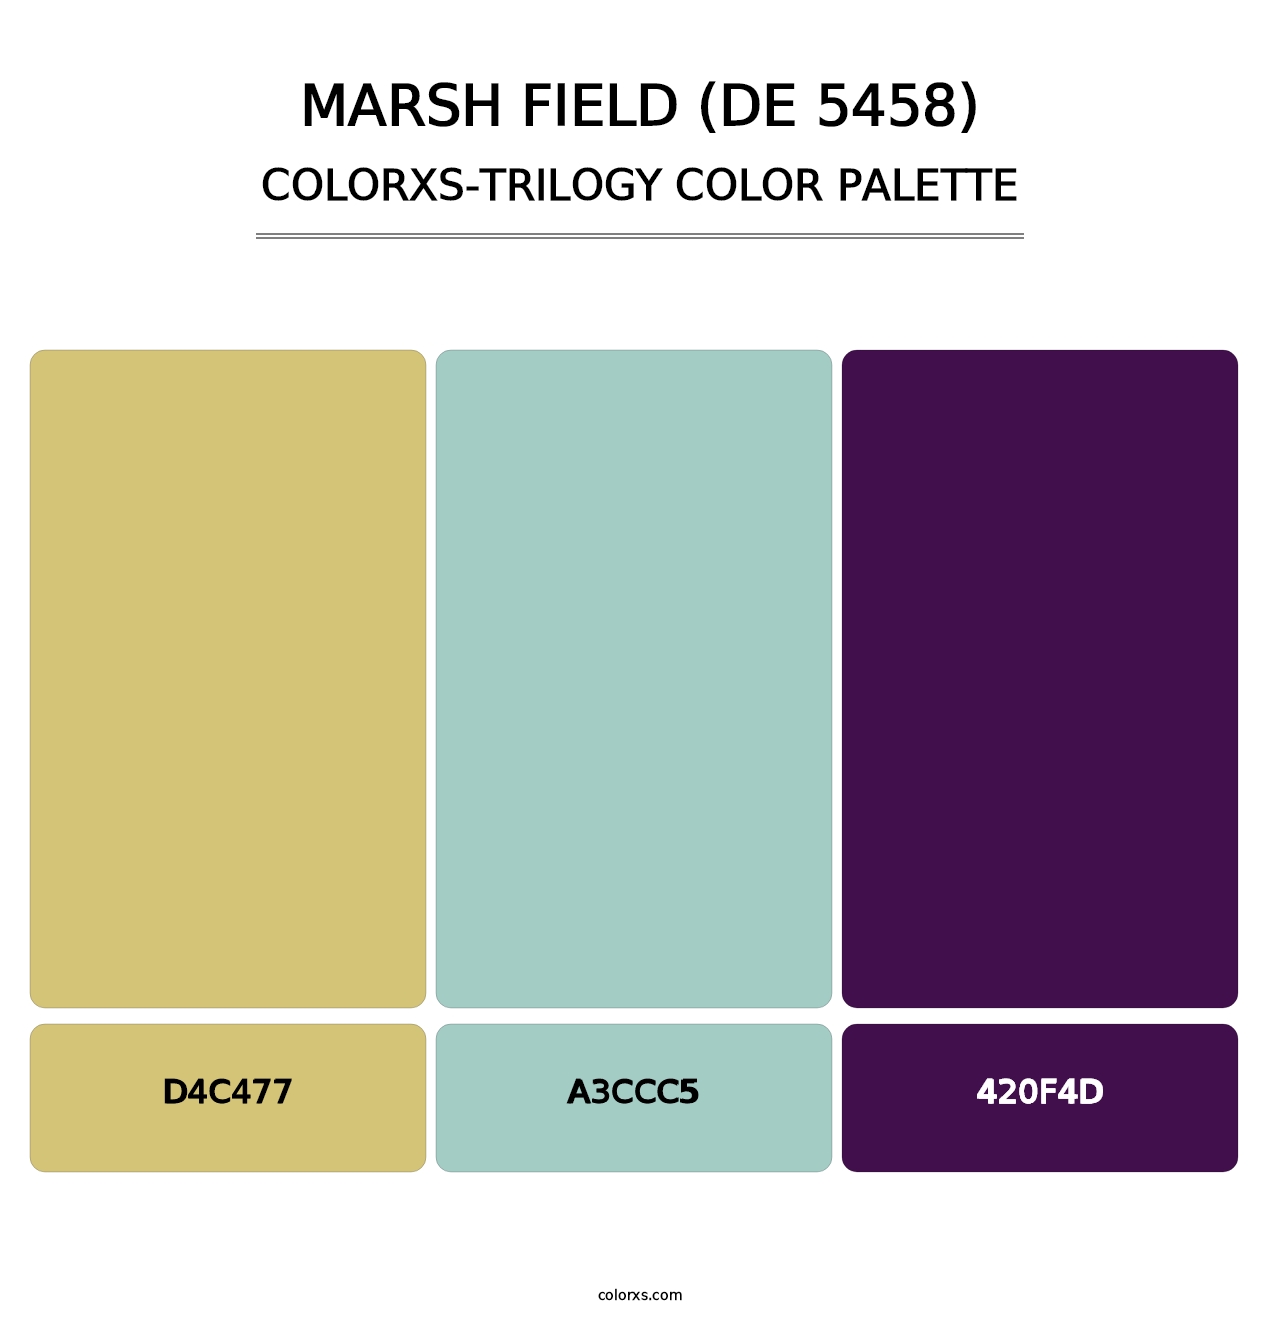 Marsh Field (DE 5458) - Colorxs Trilogy Palette